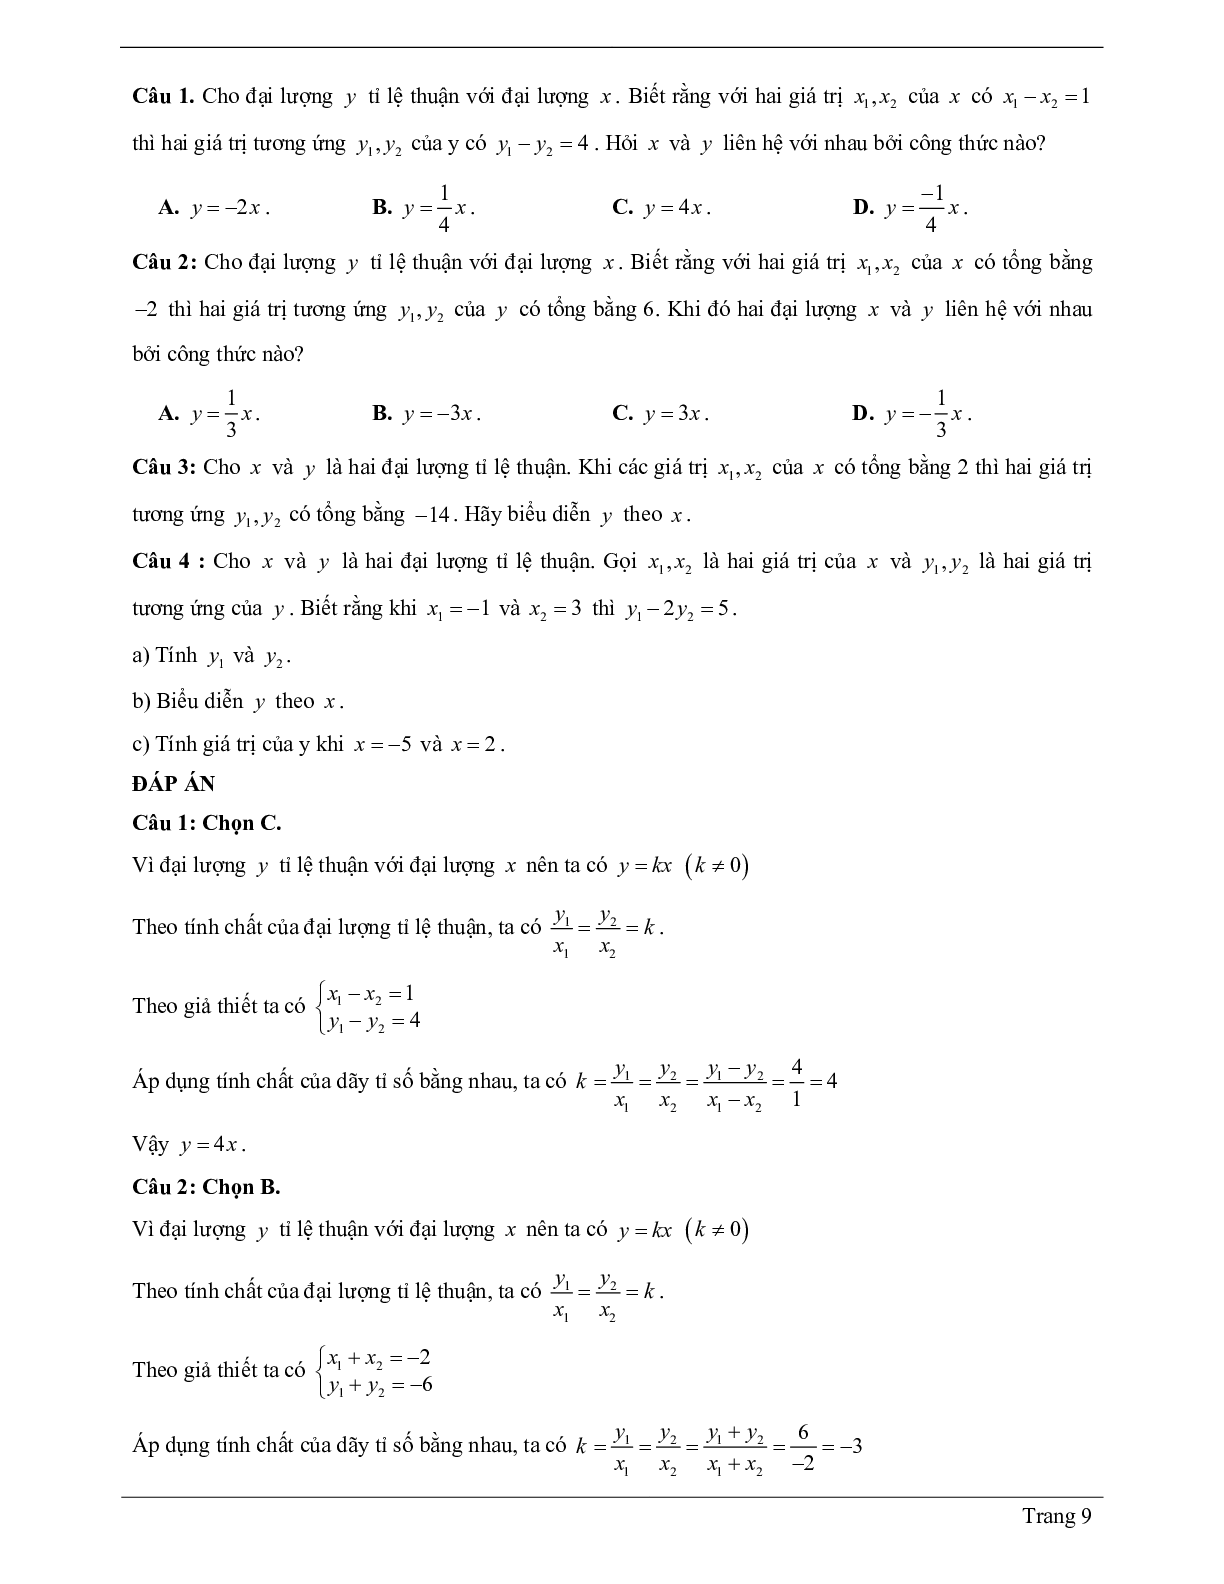 Lý thuyết Toán 7 có đáp án: Đại lượng tỉ lệ thuận - Một số bài toán về đại lượng tỉ lệ thuận (trang 9)